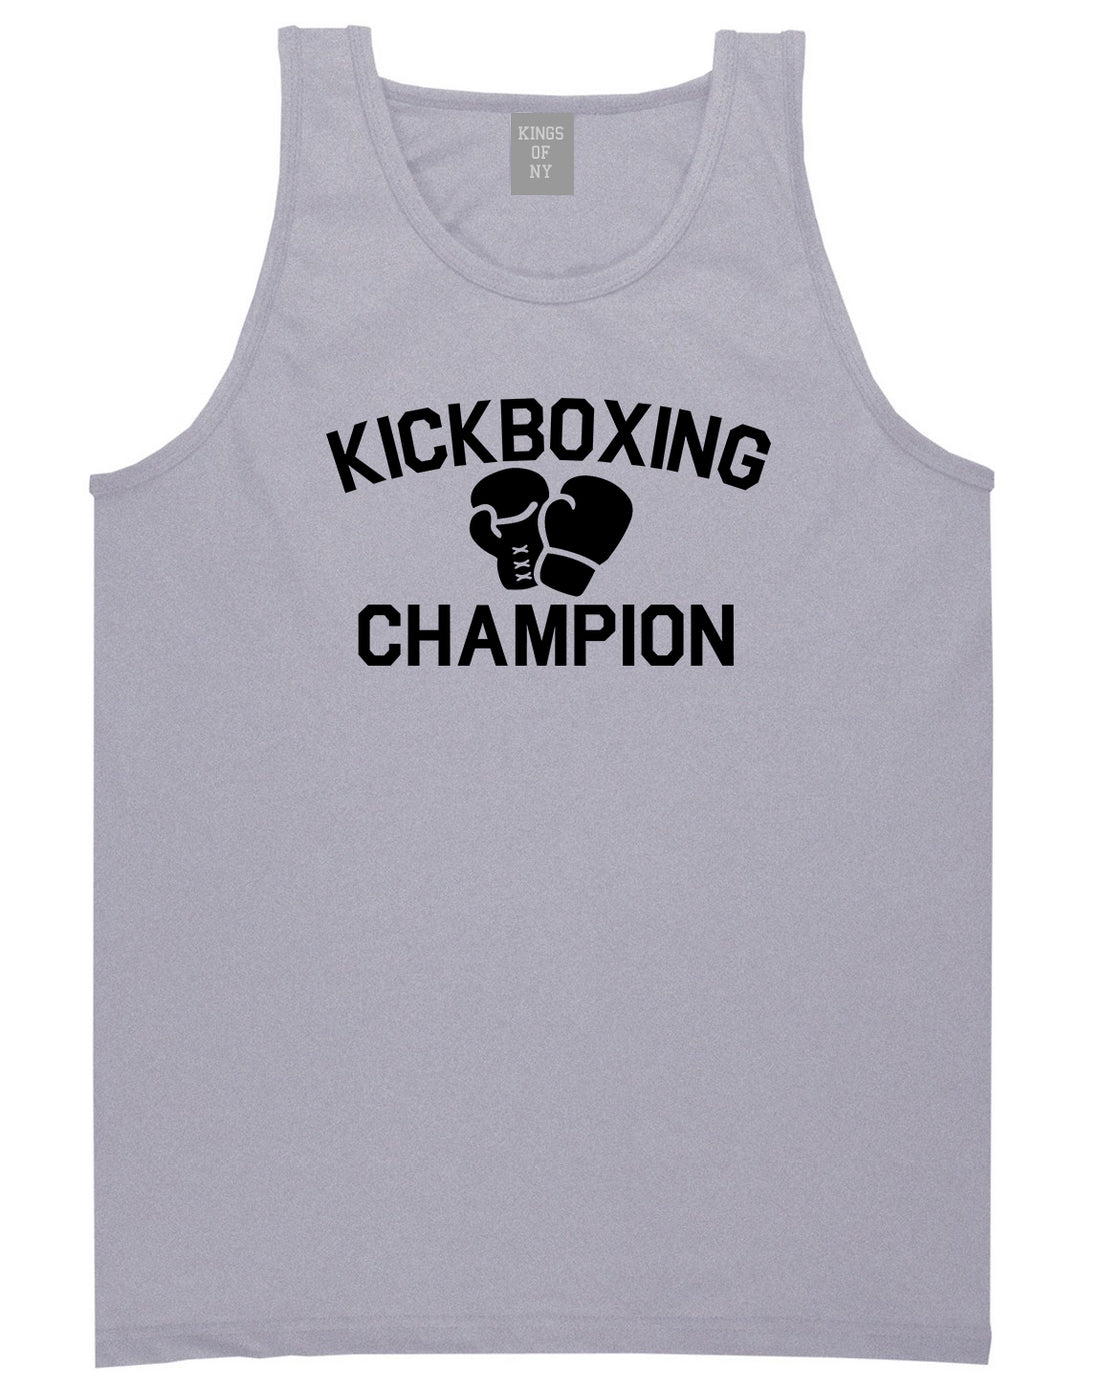 Kickboxing Champion Mens Tank Top Shirt Grey by Kings Of NY